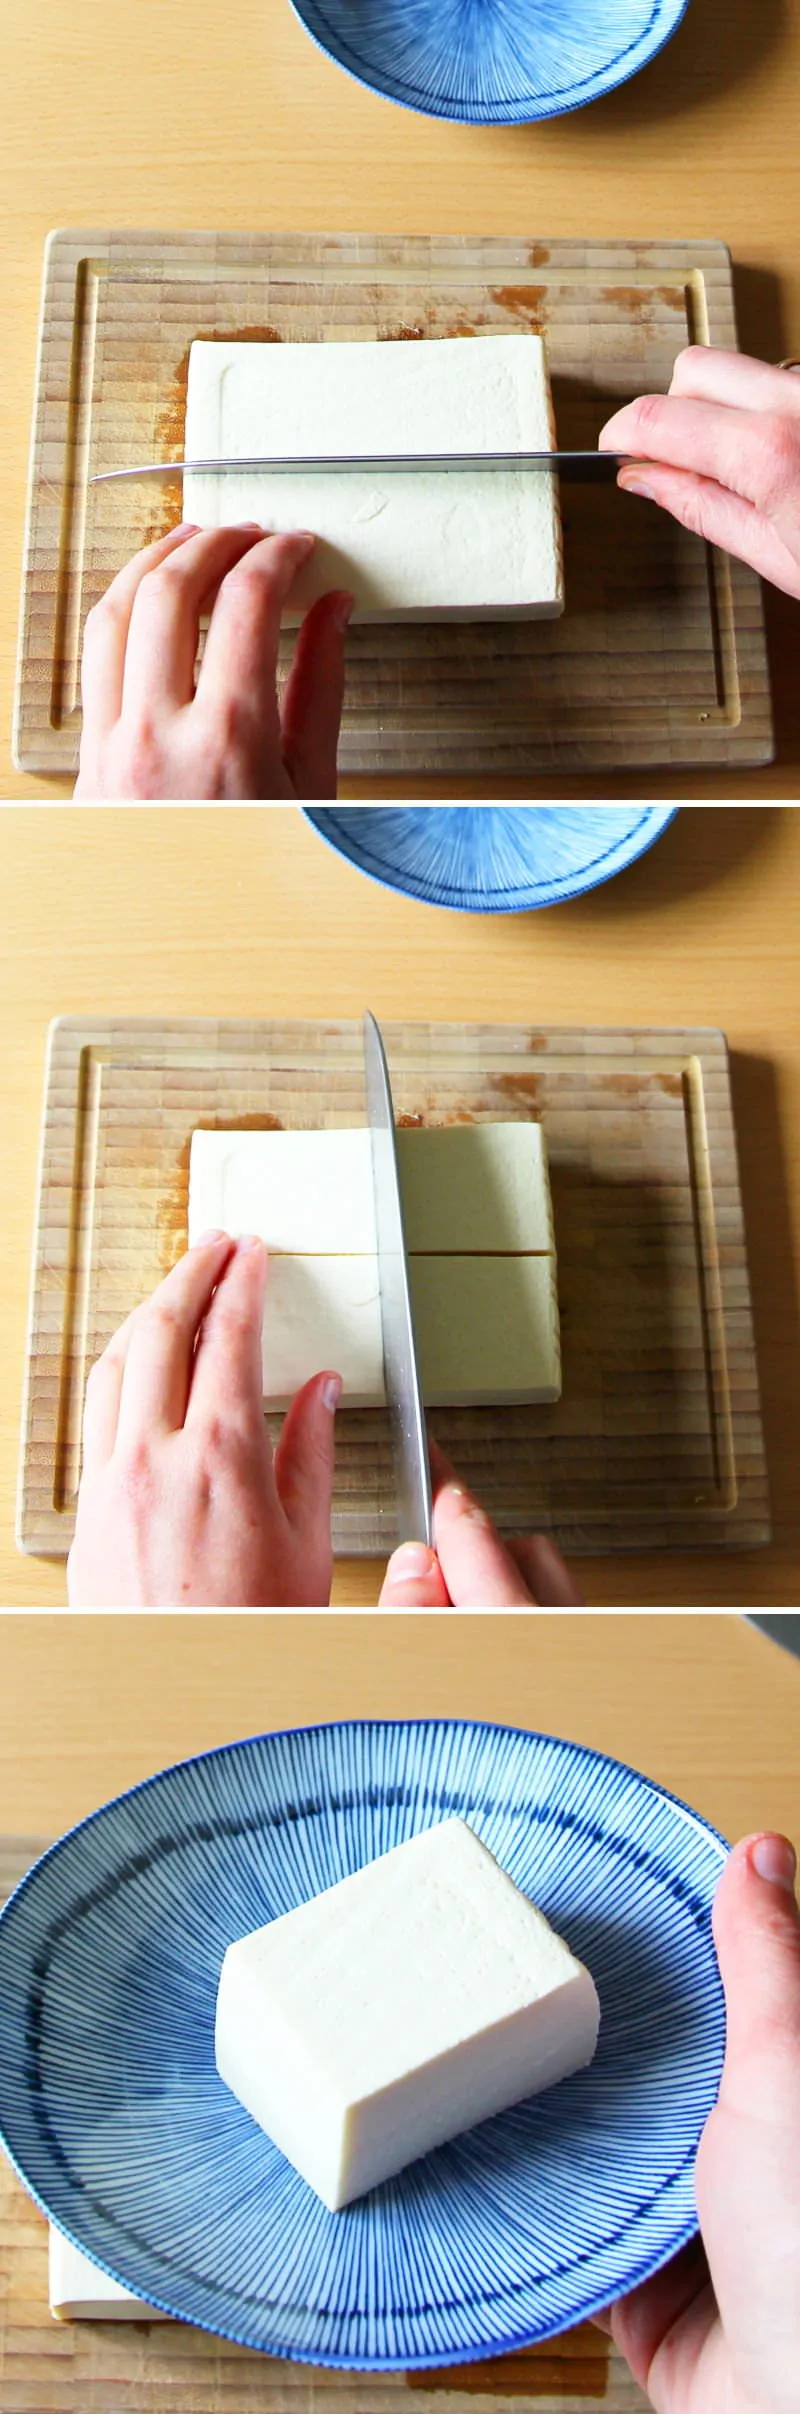 Hiyayakko Schritt 5 Tofu schneiden